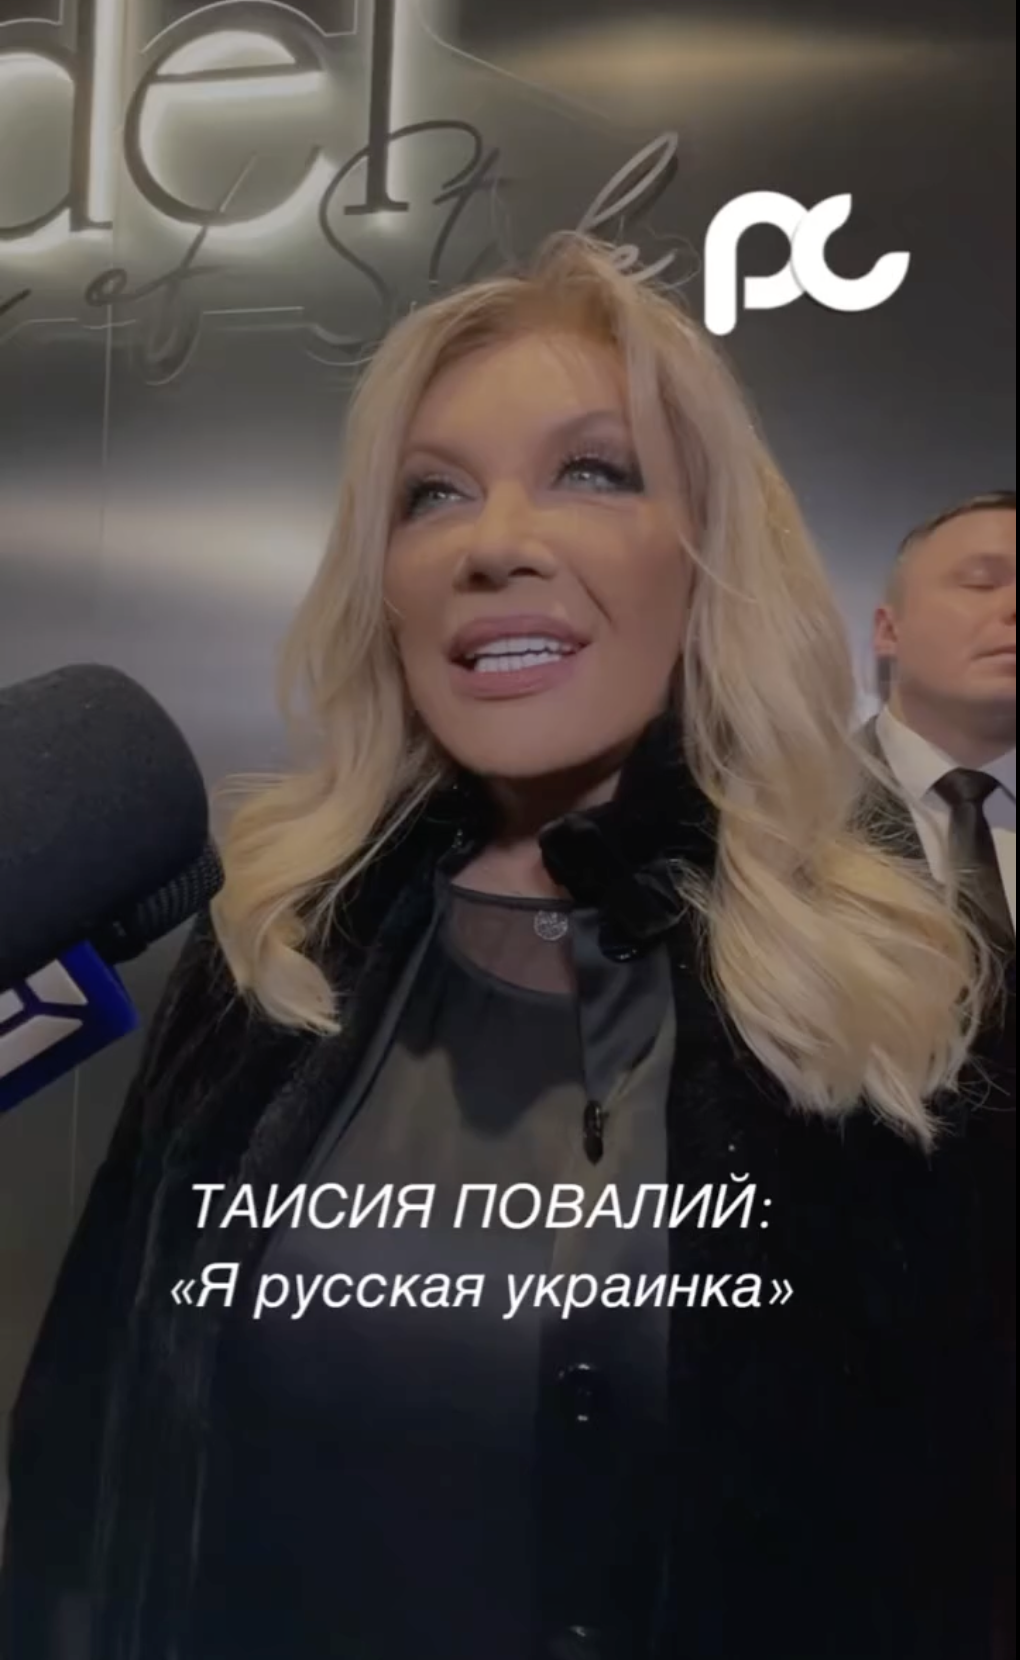 Таисия Повалий, которая получила российский паспорт и скрывает квартиру в Москве, сделала циничное заявление о своей национальности